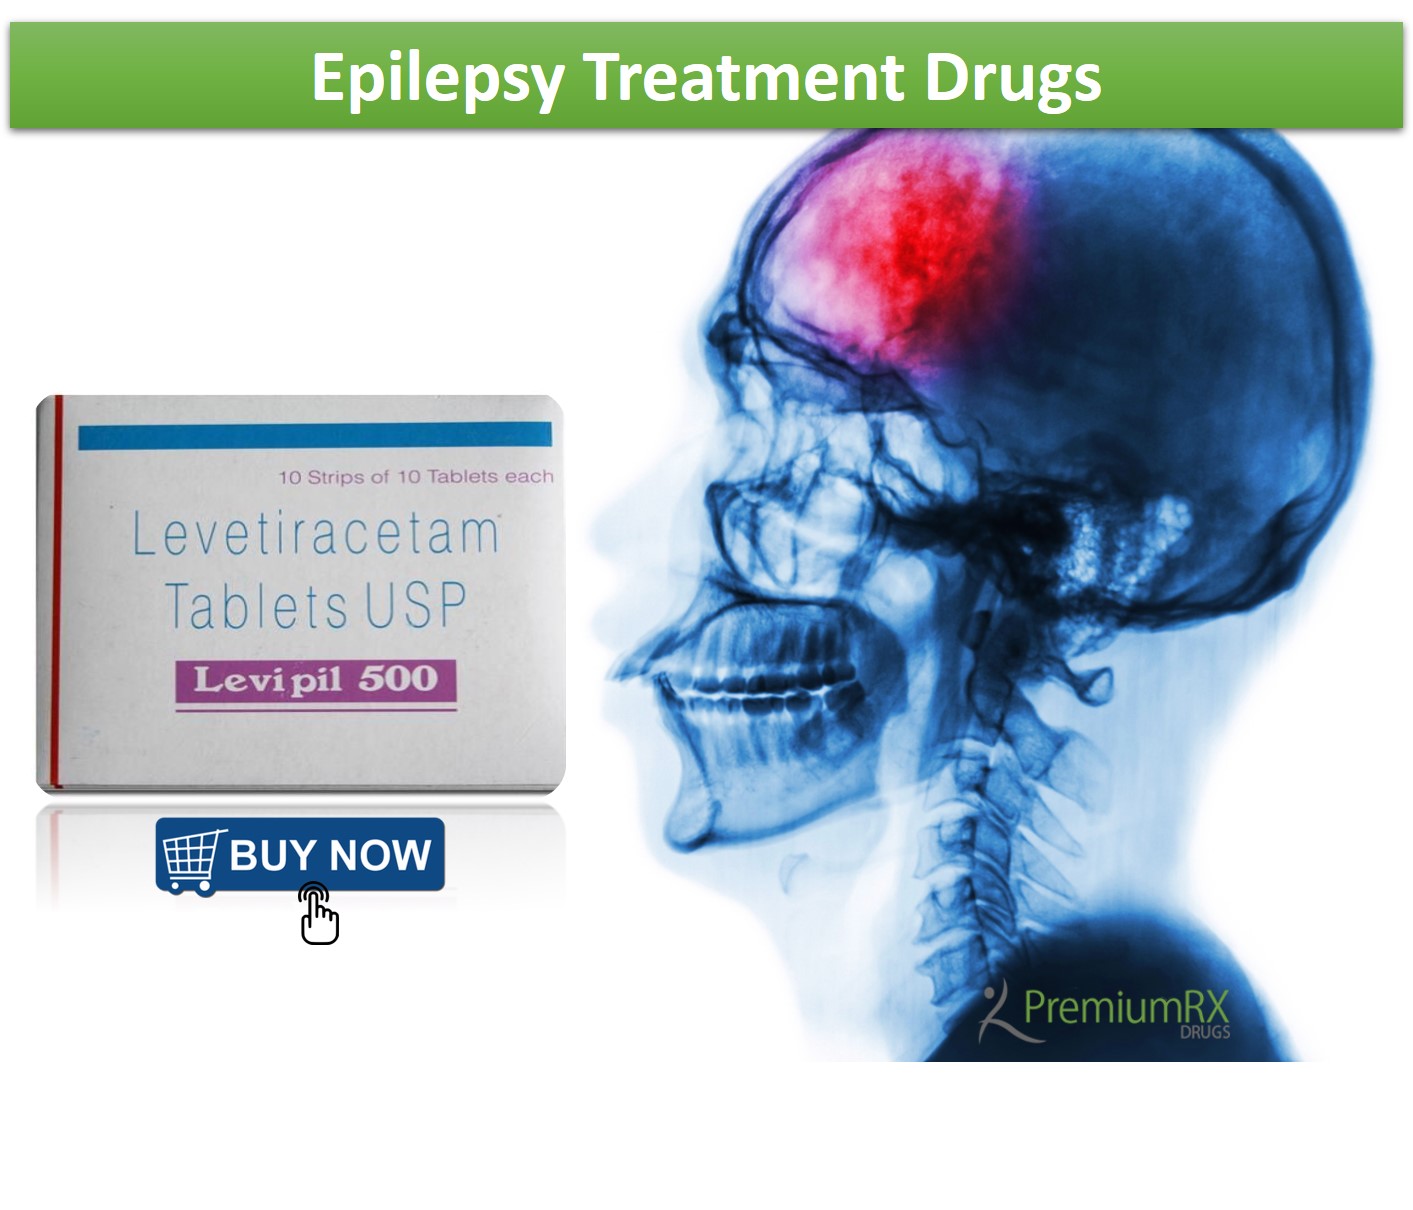 Epilepsy Treatment Drugs